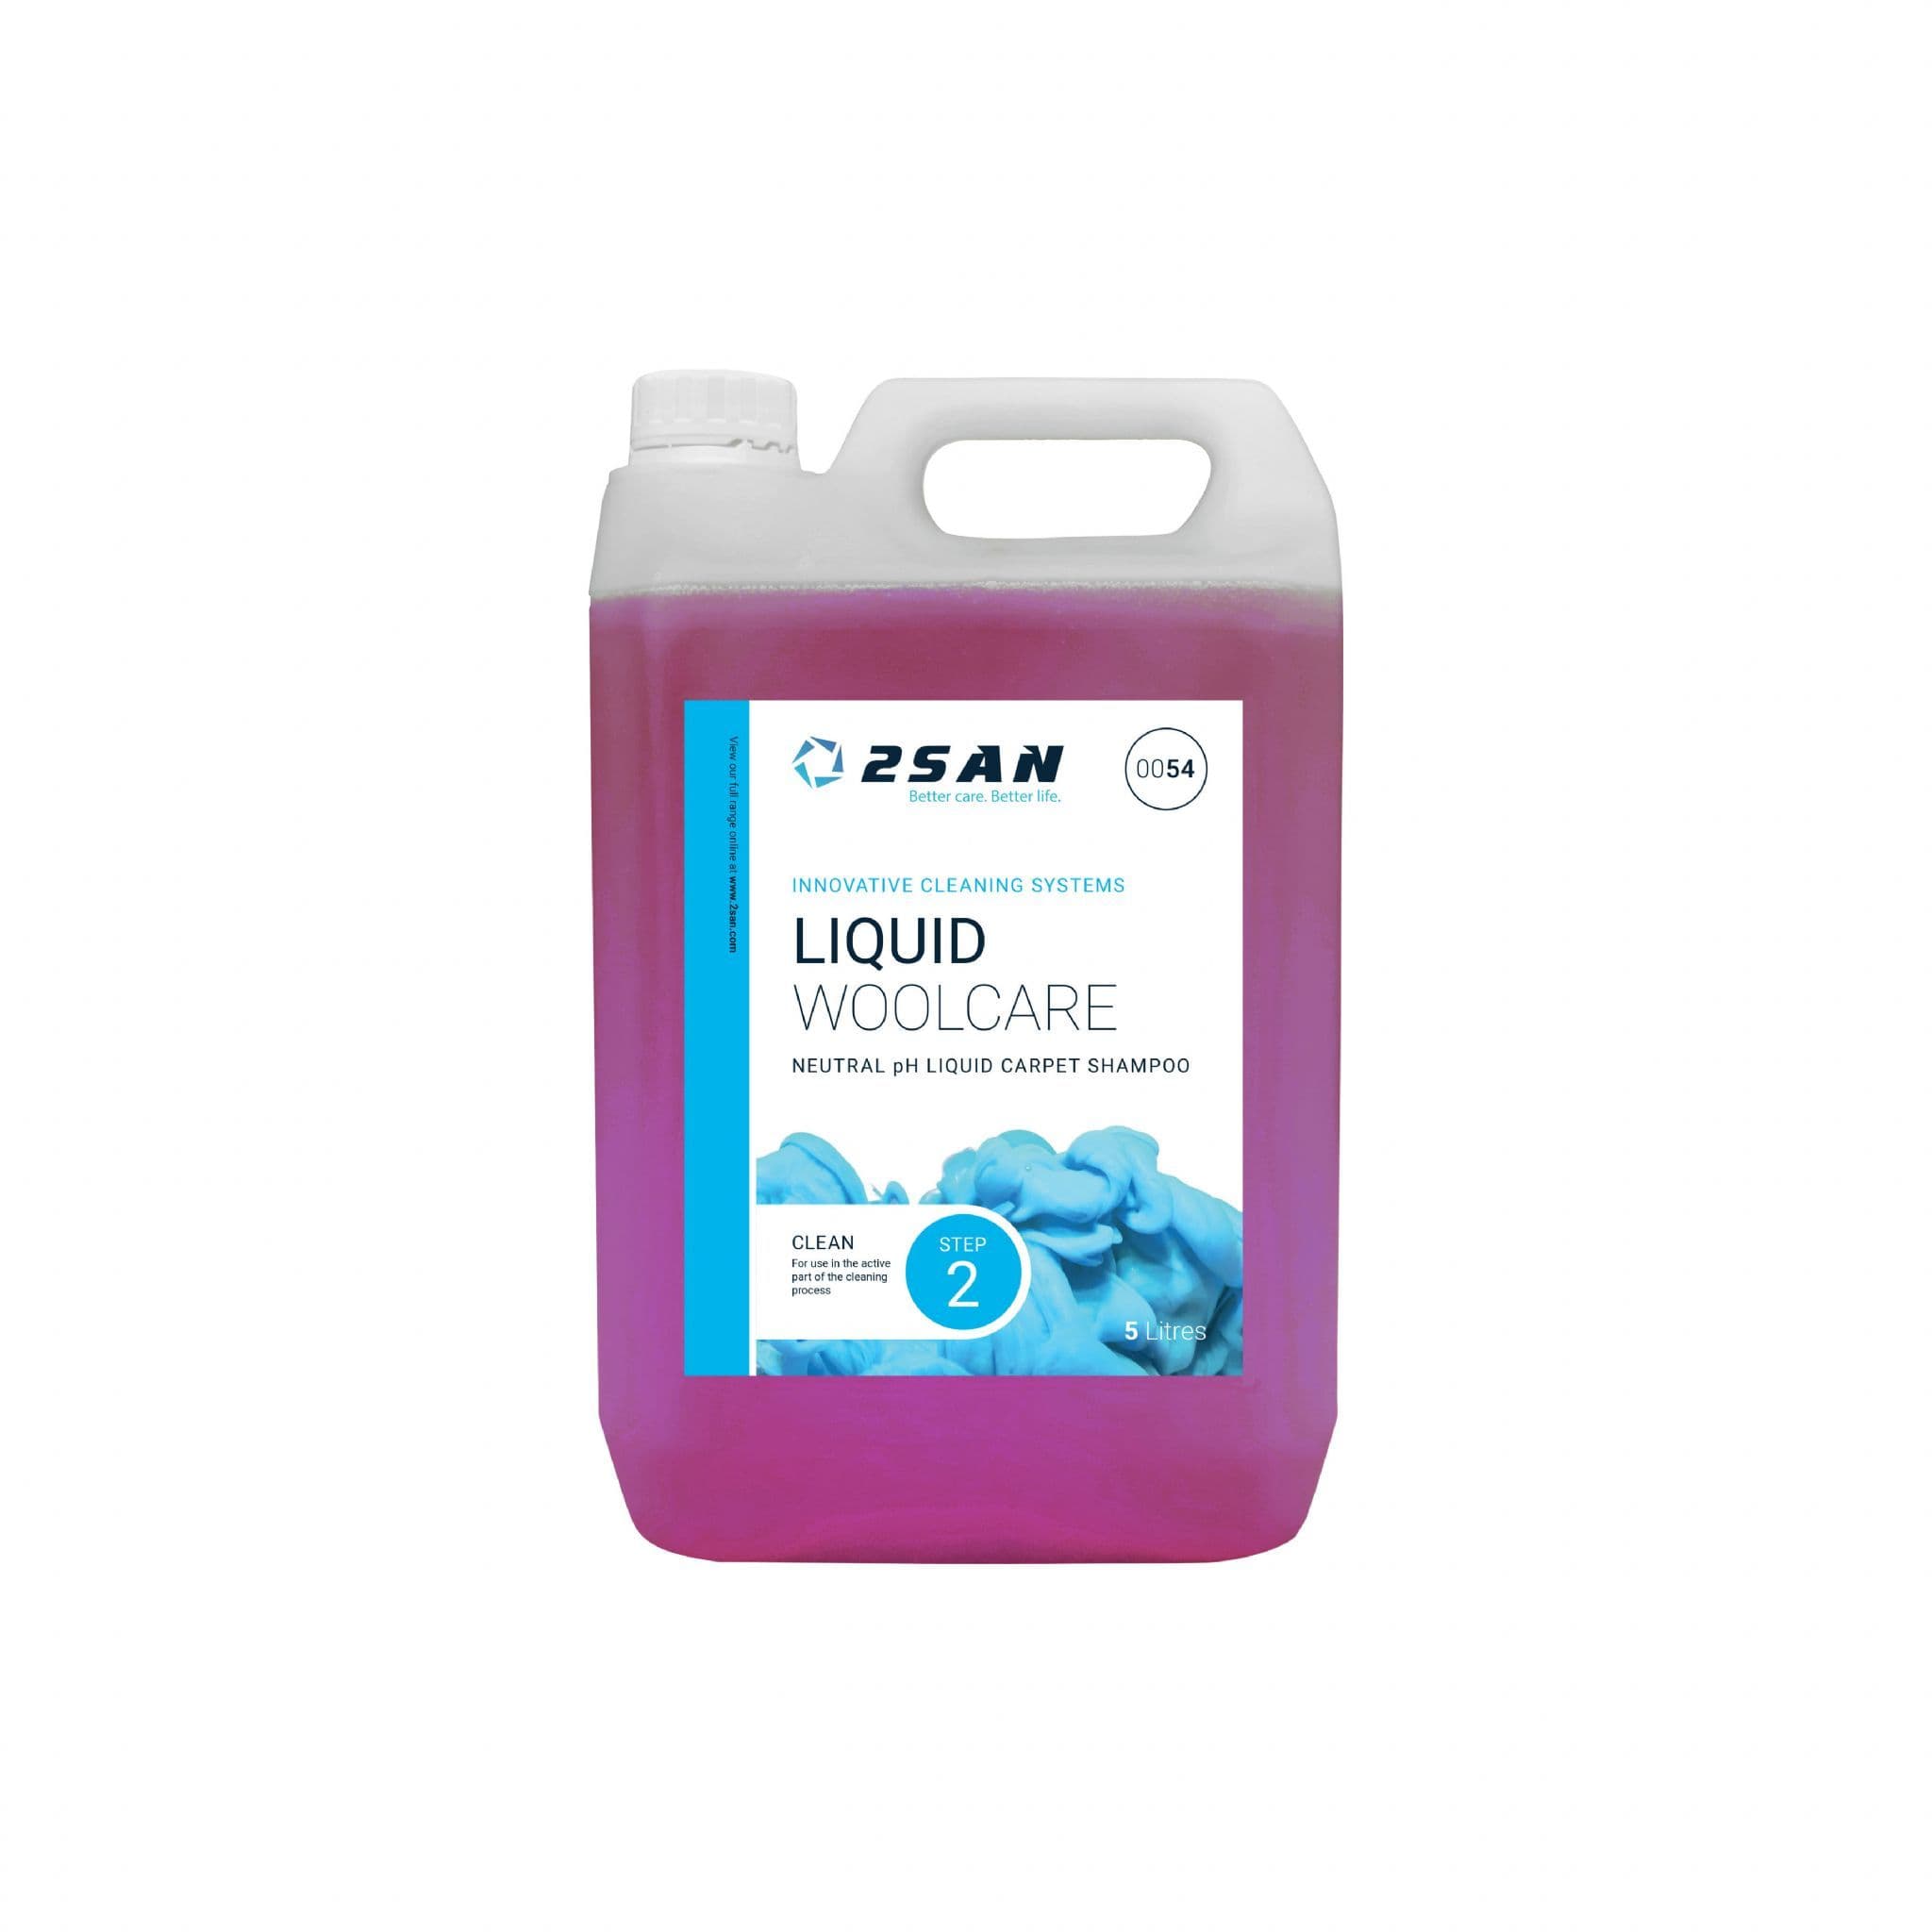 2SAN(Craftex) Liquid Woolcare 5L 0054